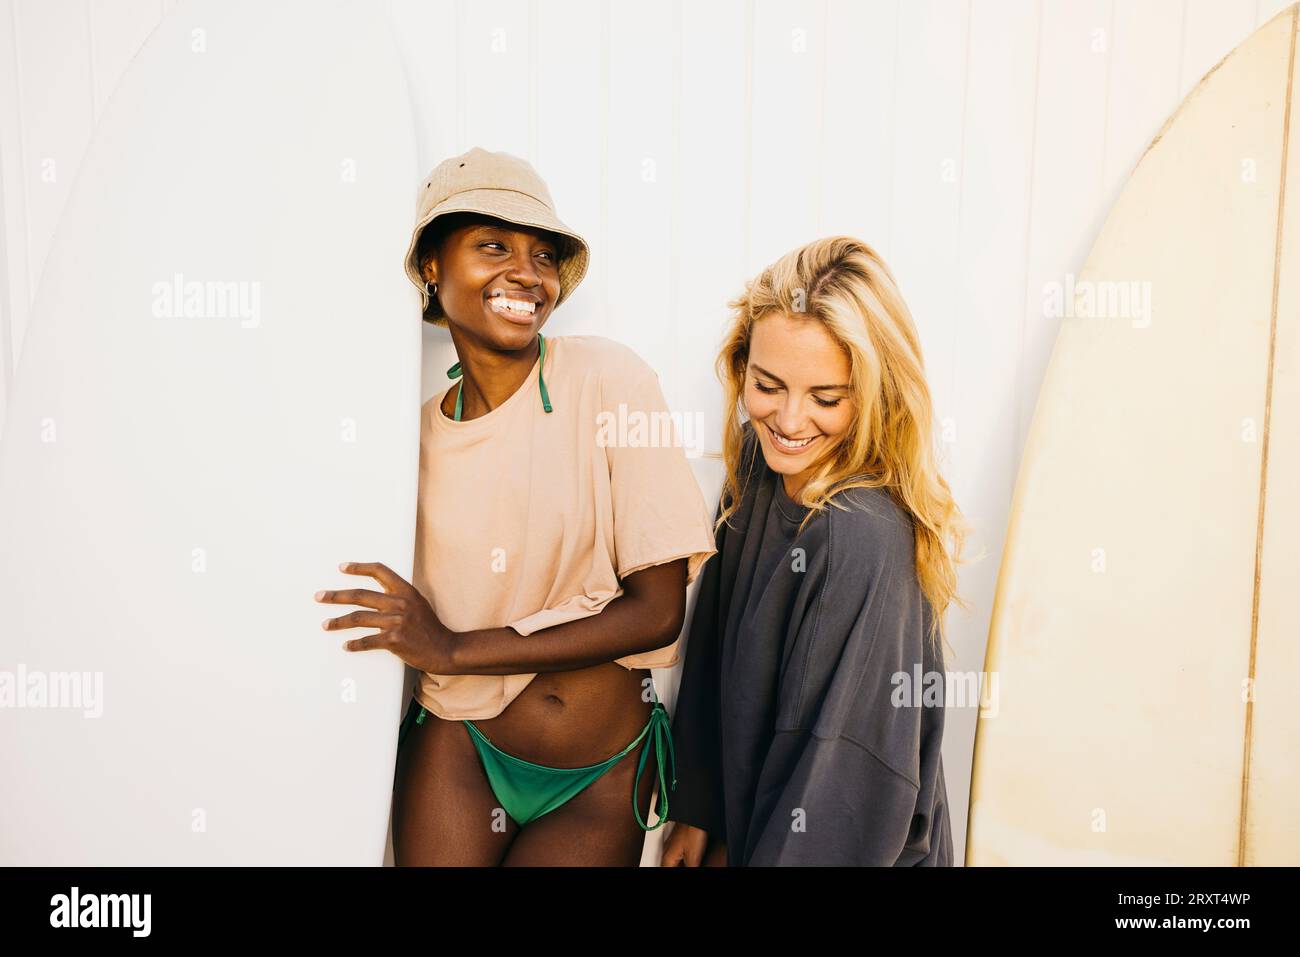 Portrait de deux jeunes femmes joyeuses debout avec leurs planches de surf après une journée de repos à la plage. Deux surfeuses en maillot de bain tenant leur surfboa Banque D'Images